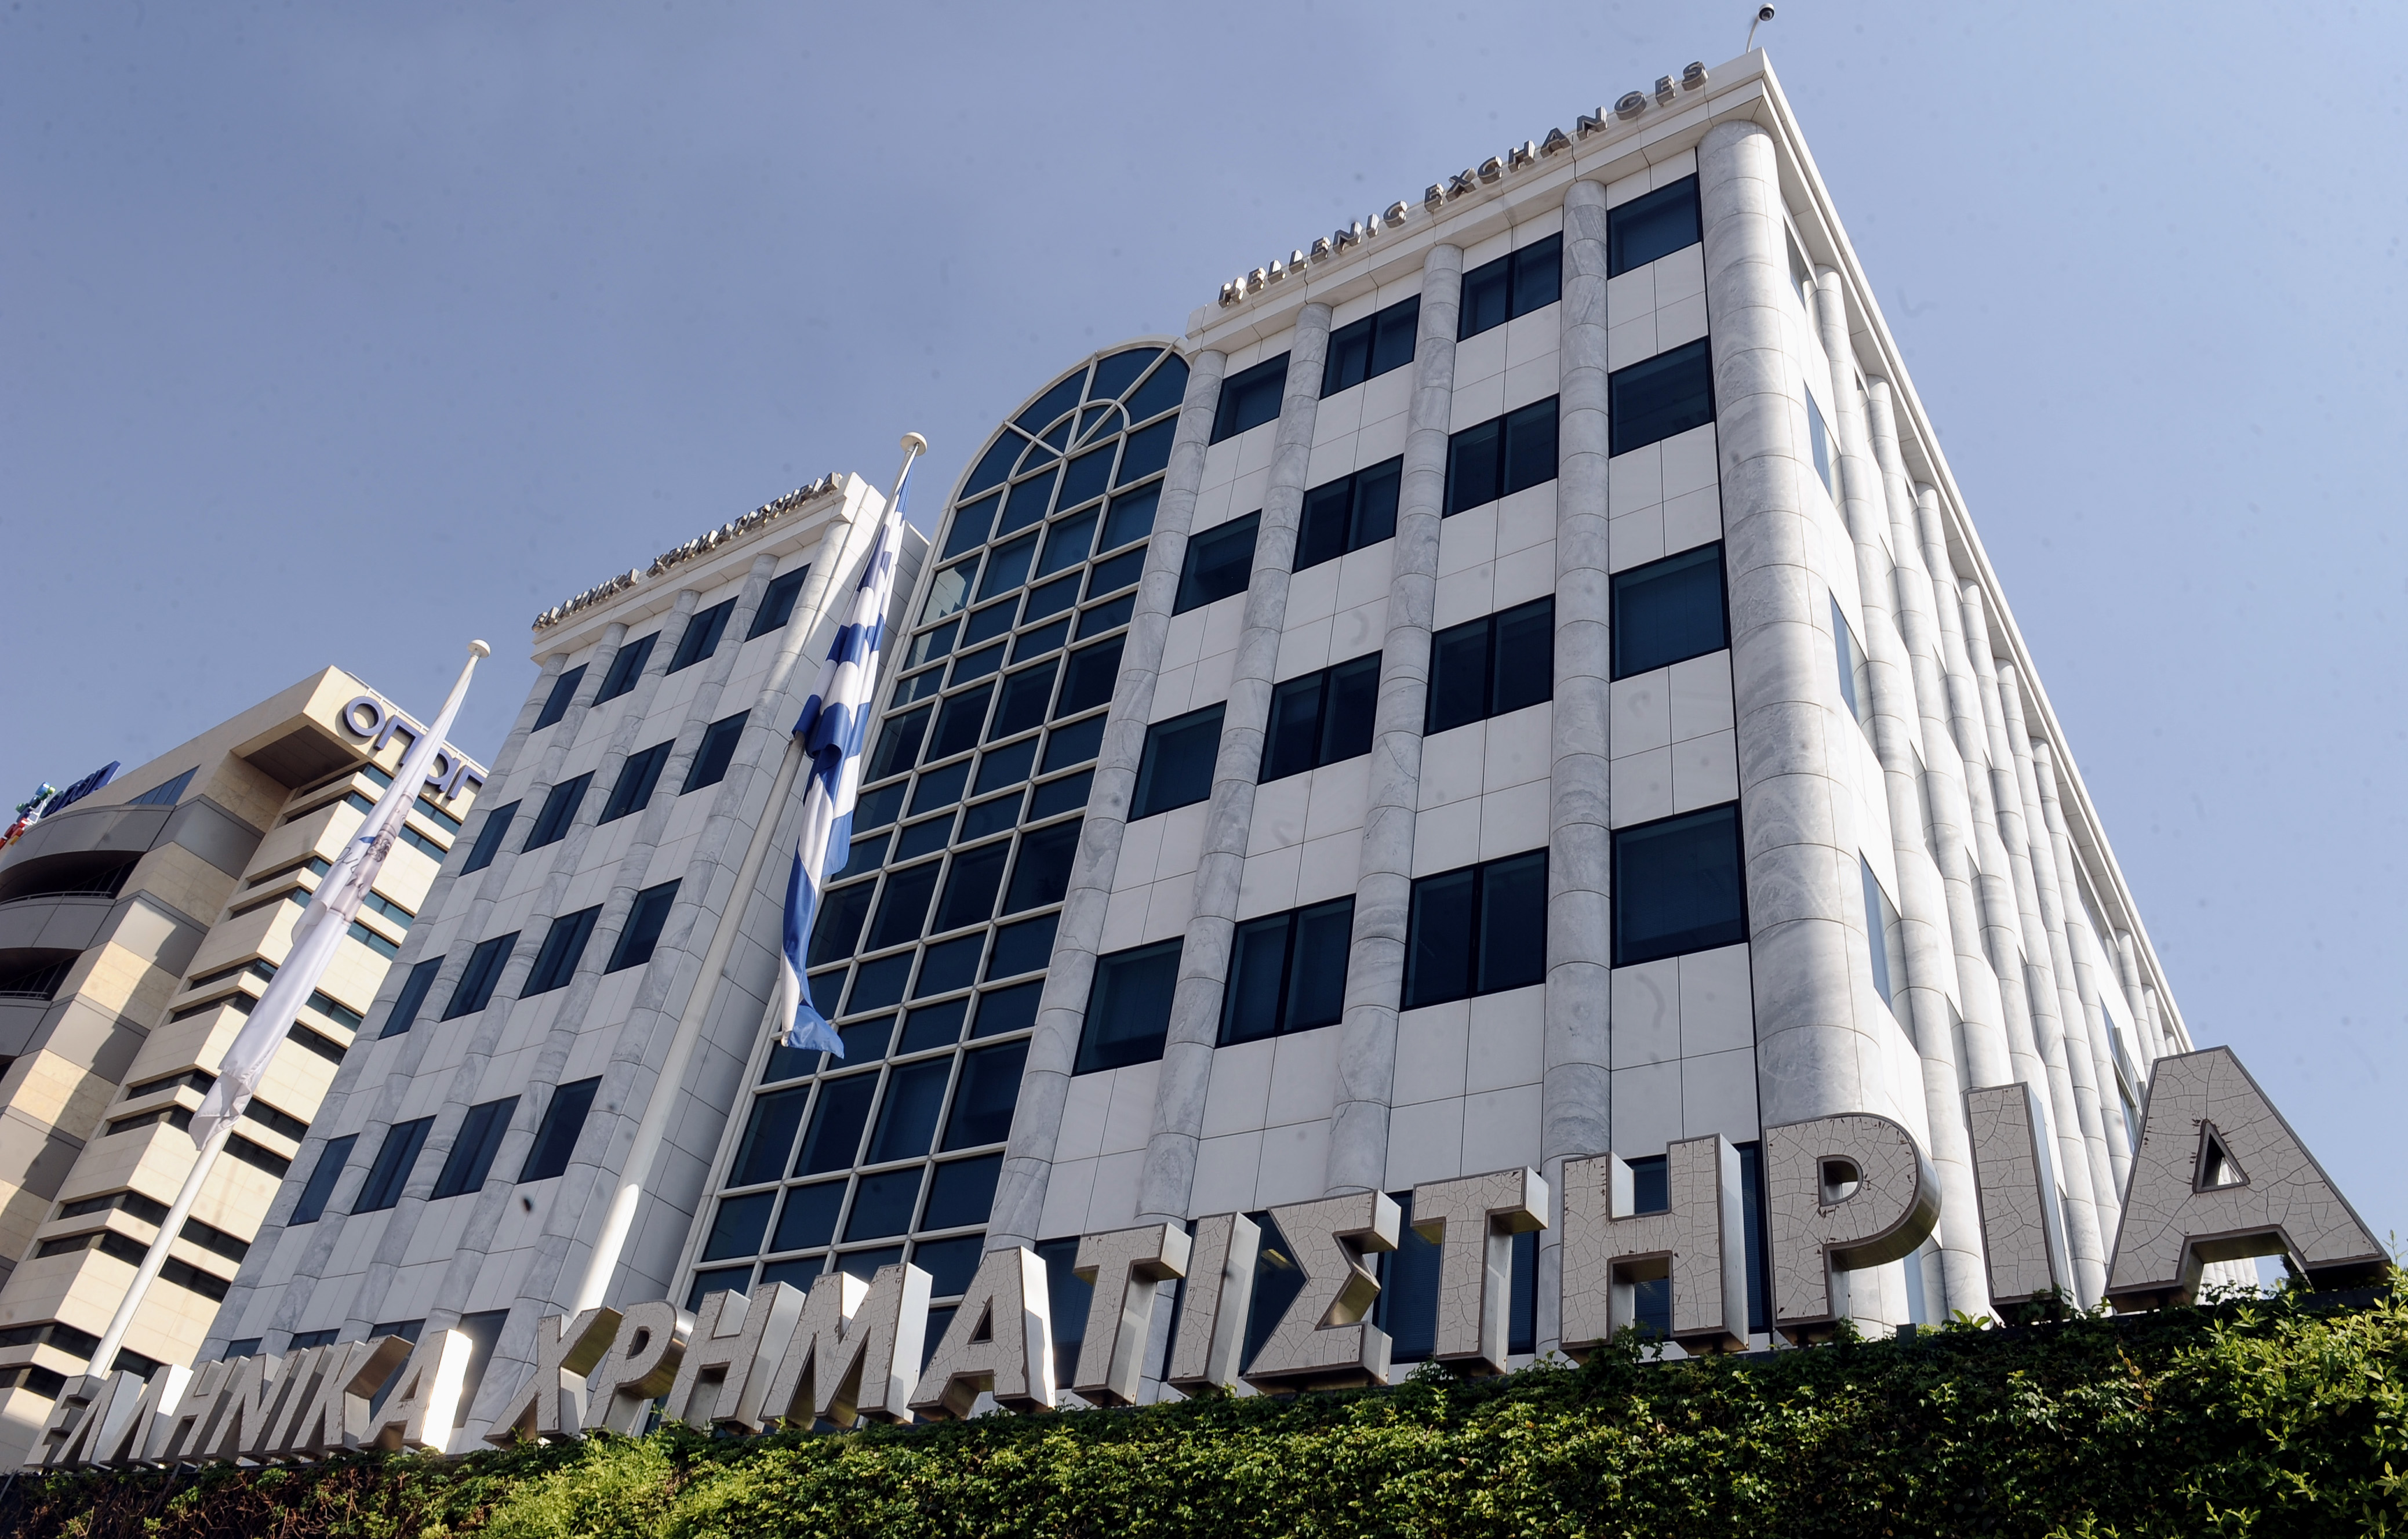 Σημαντική άνοδος στο Χρηματιστήριο Αθηνών την Τρίτη